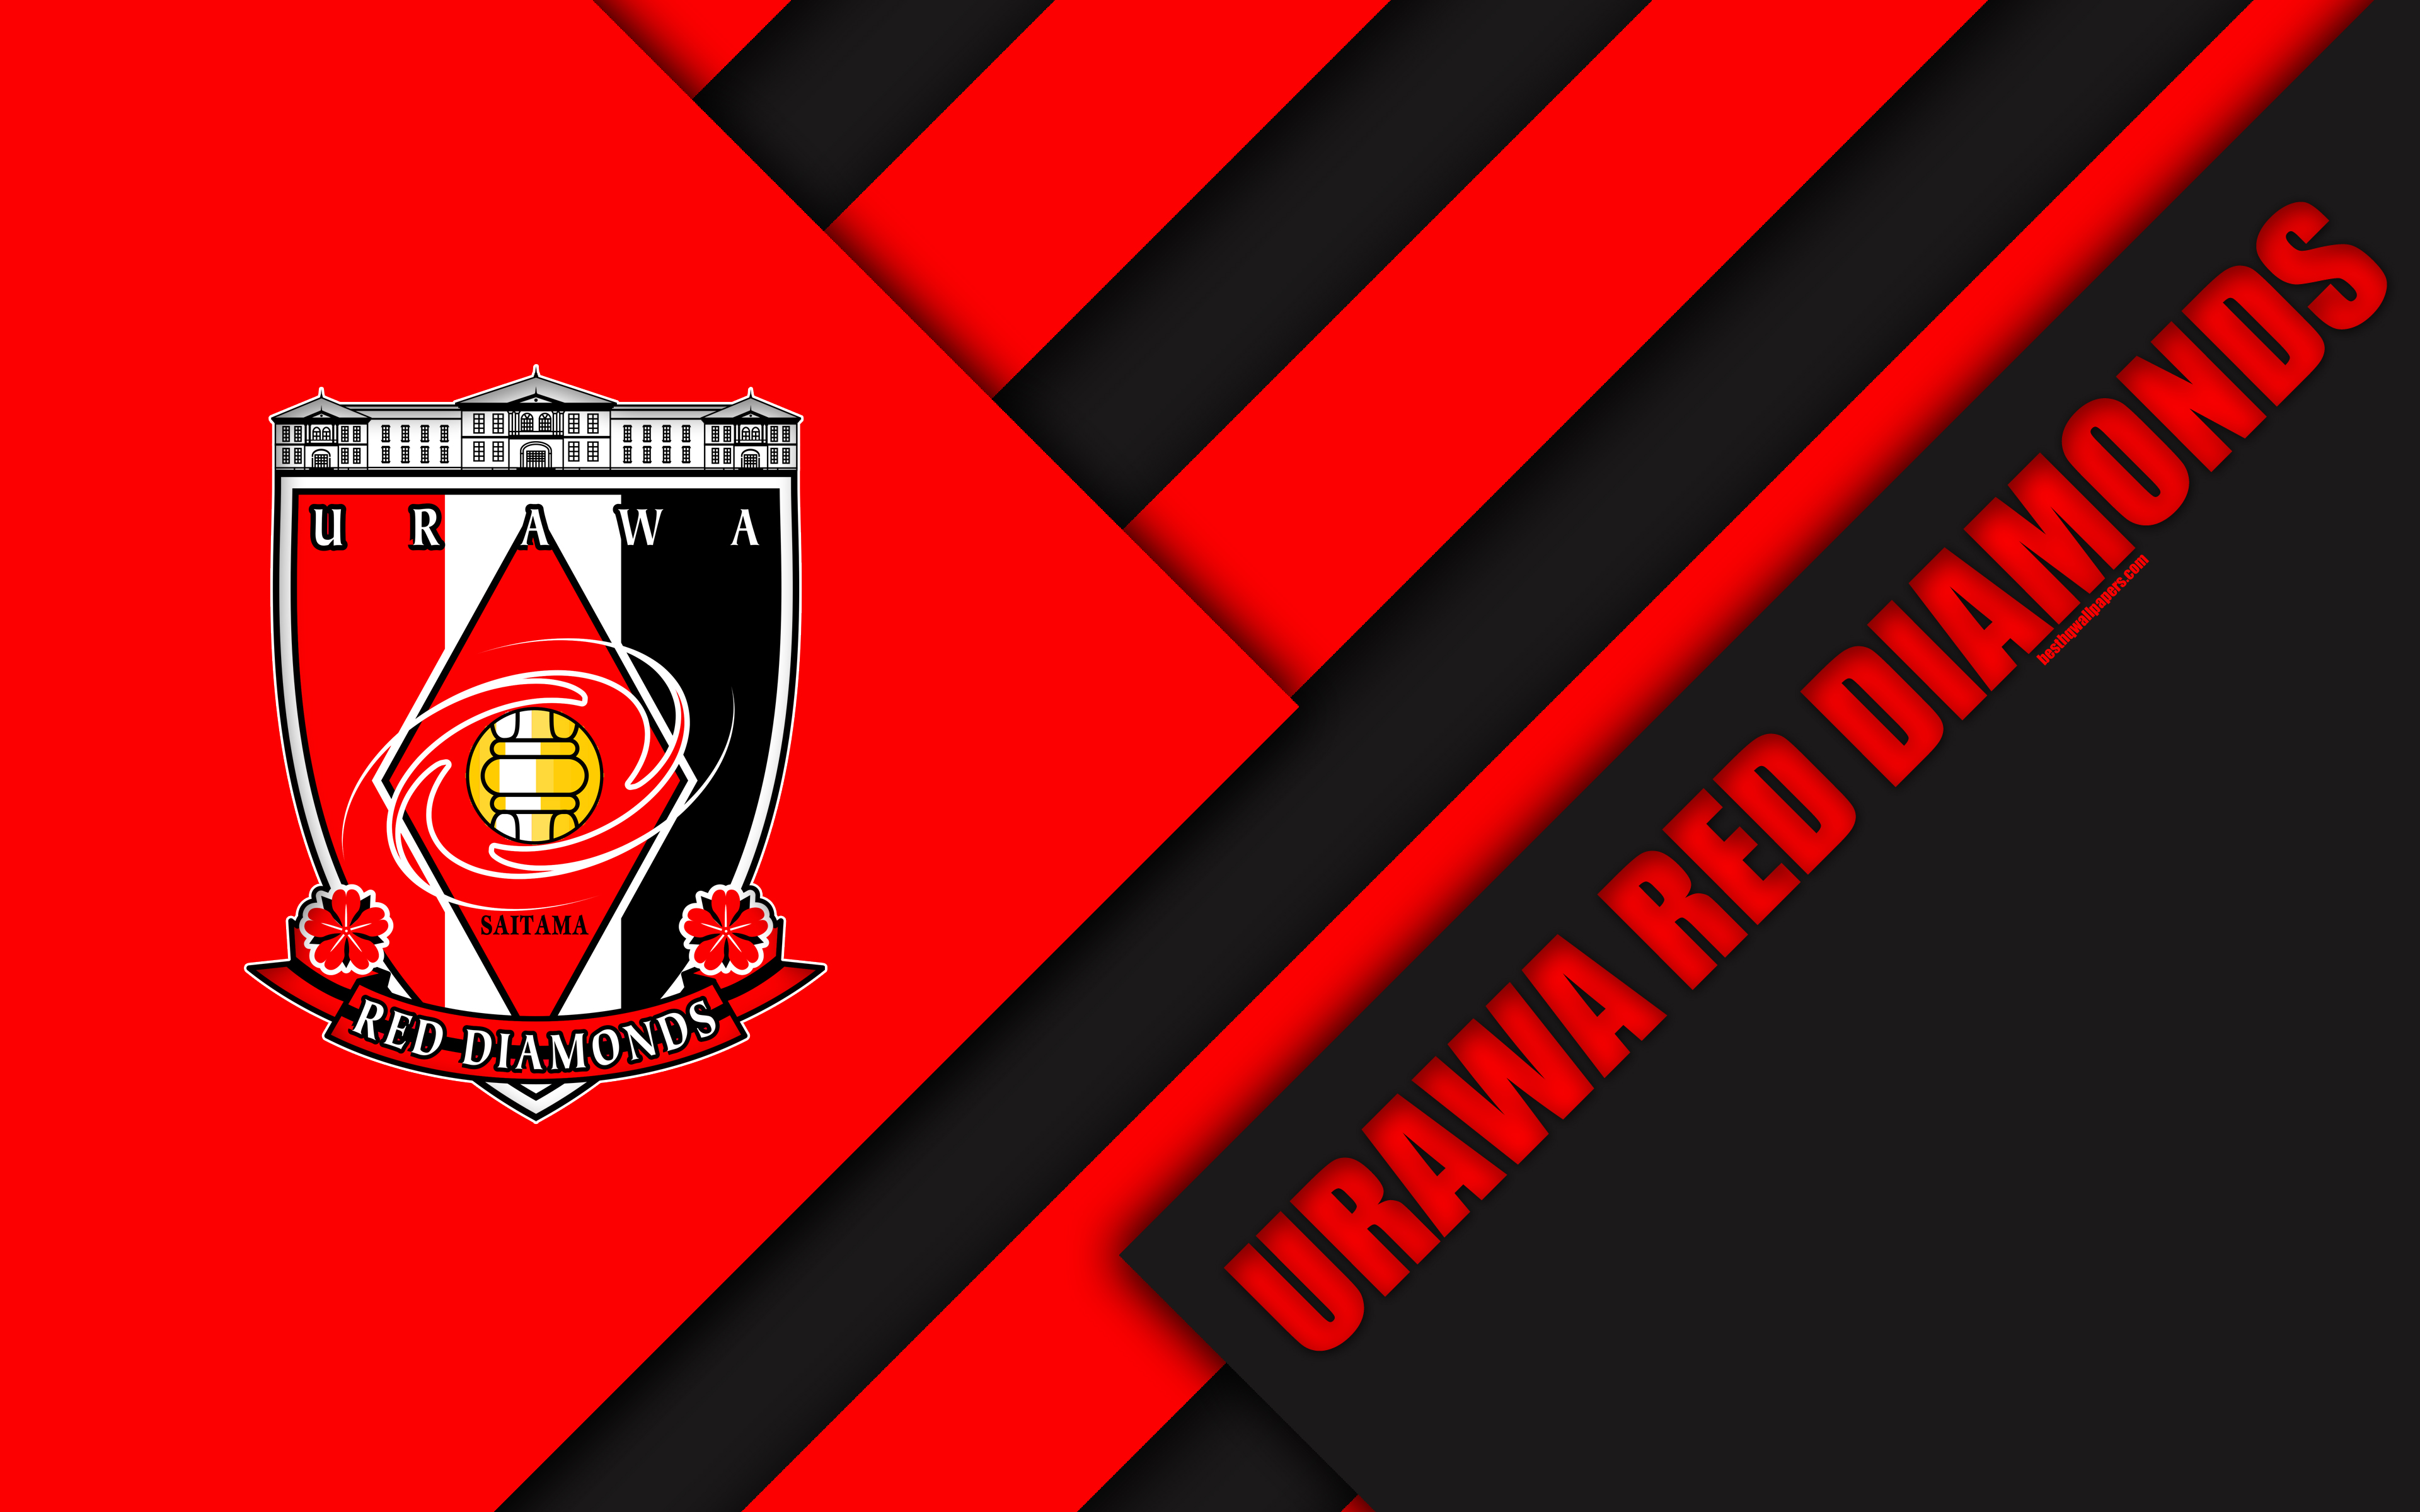 Download wallpaper Urawa Red Diamonds FC, 4k, material design